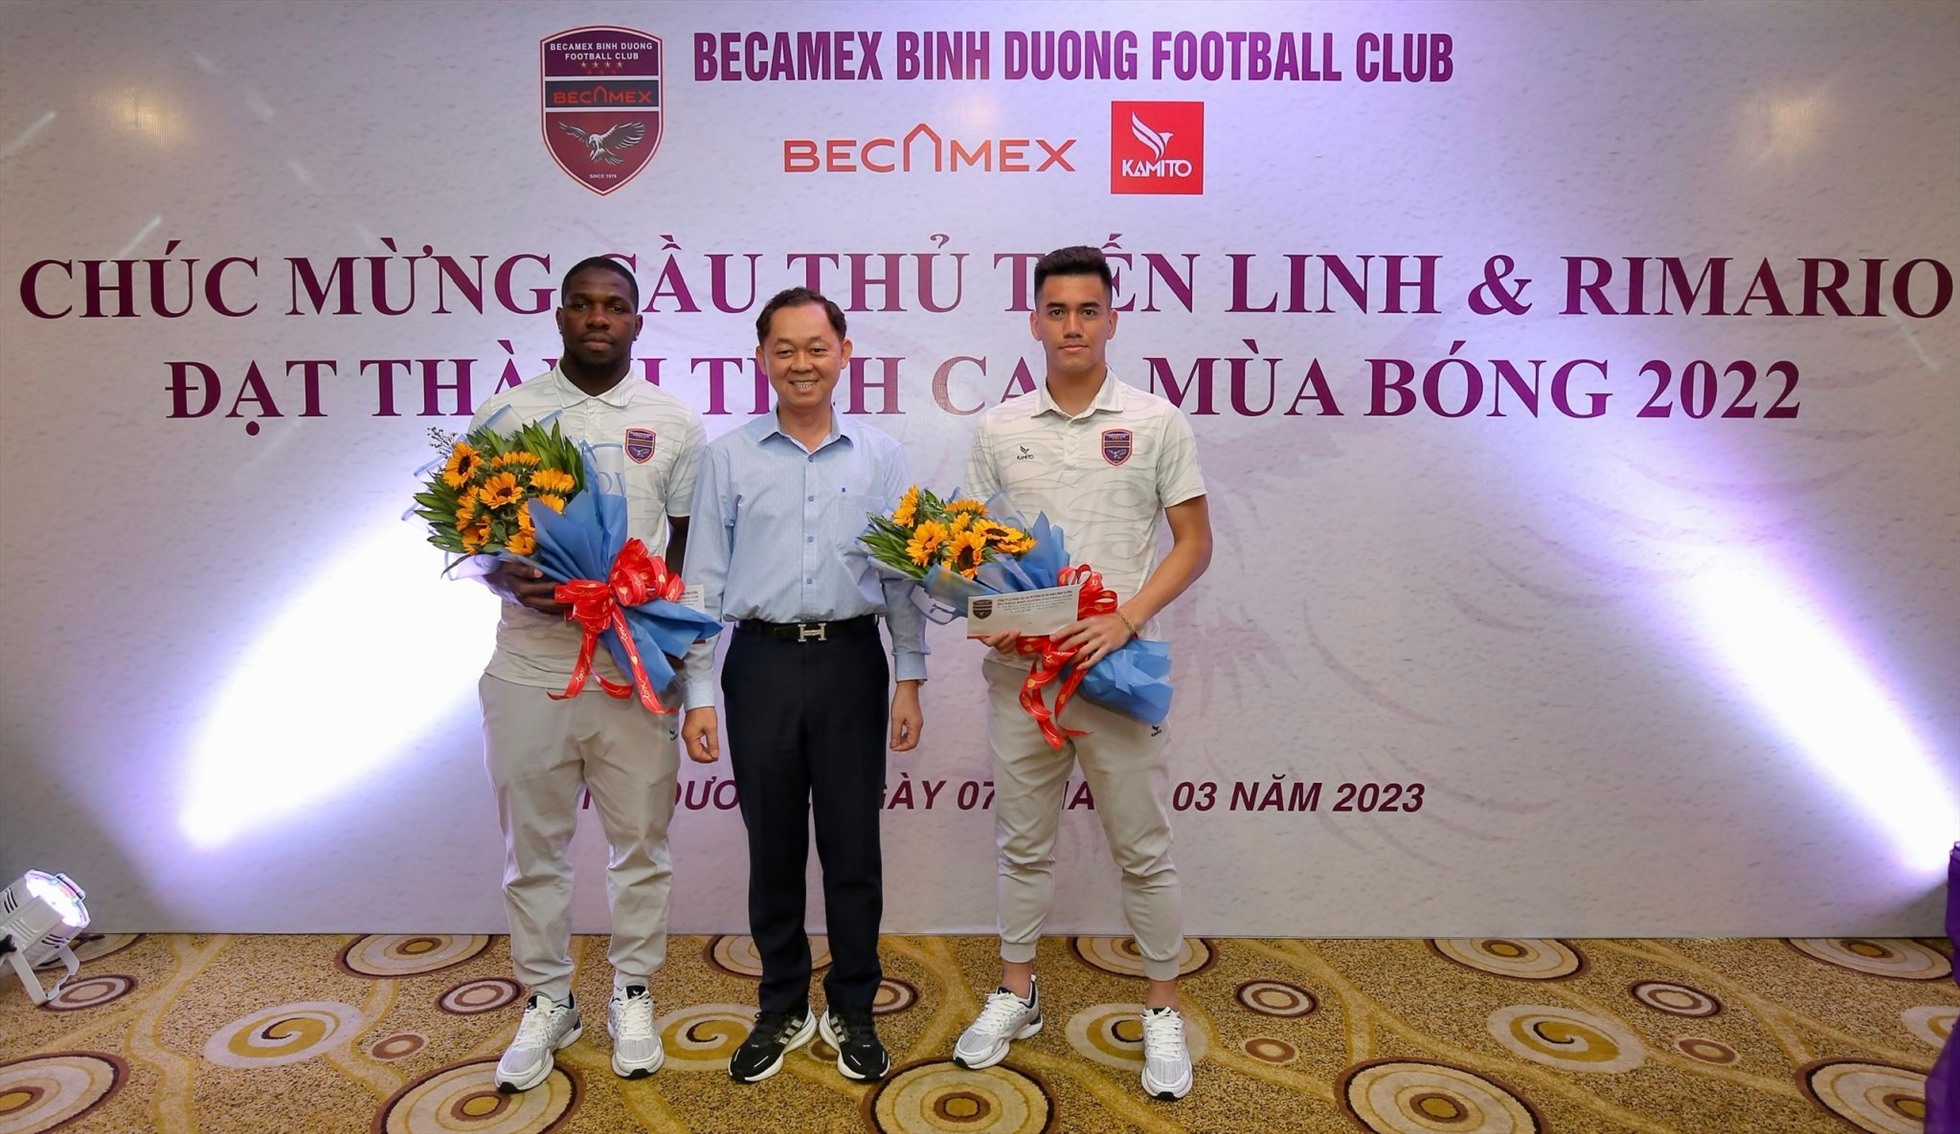 Bộ đôi tiền đạo Nguyễn Tiến Linh và Rimario được lãnh đạo câu lạc bộ B. Bình Dương tặng hoa chúc mừng. Ảnh: Đ.T